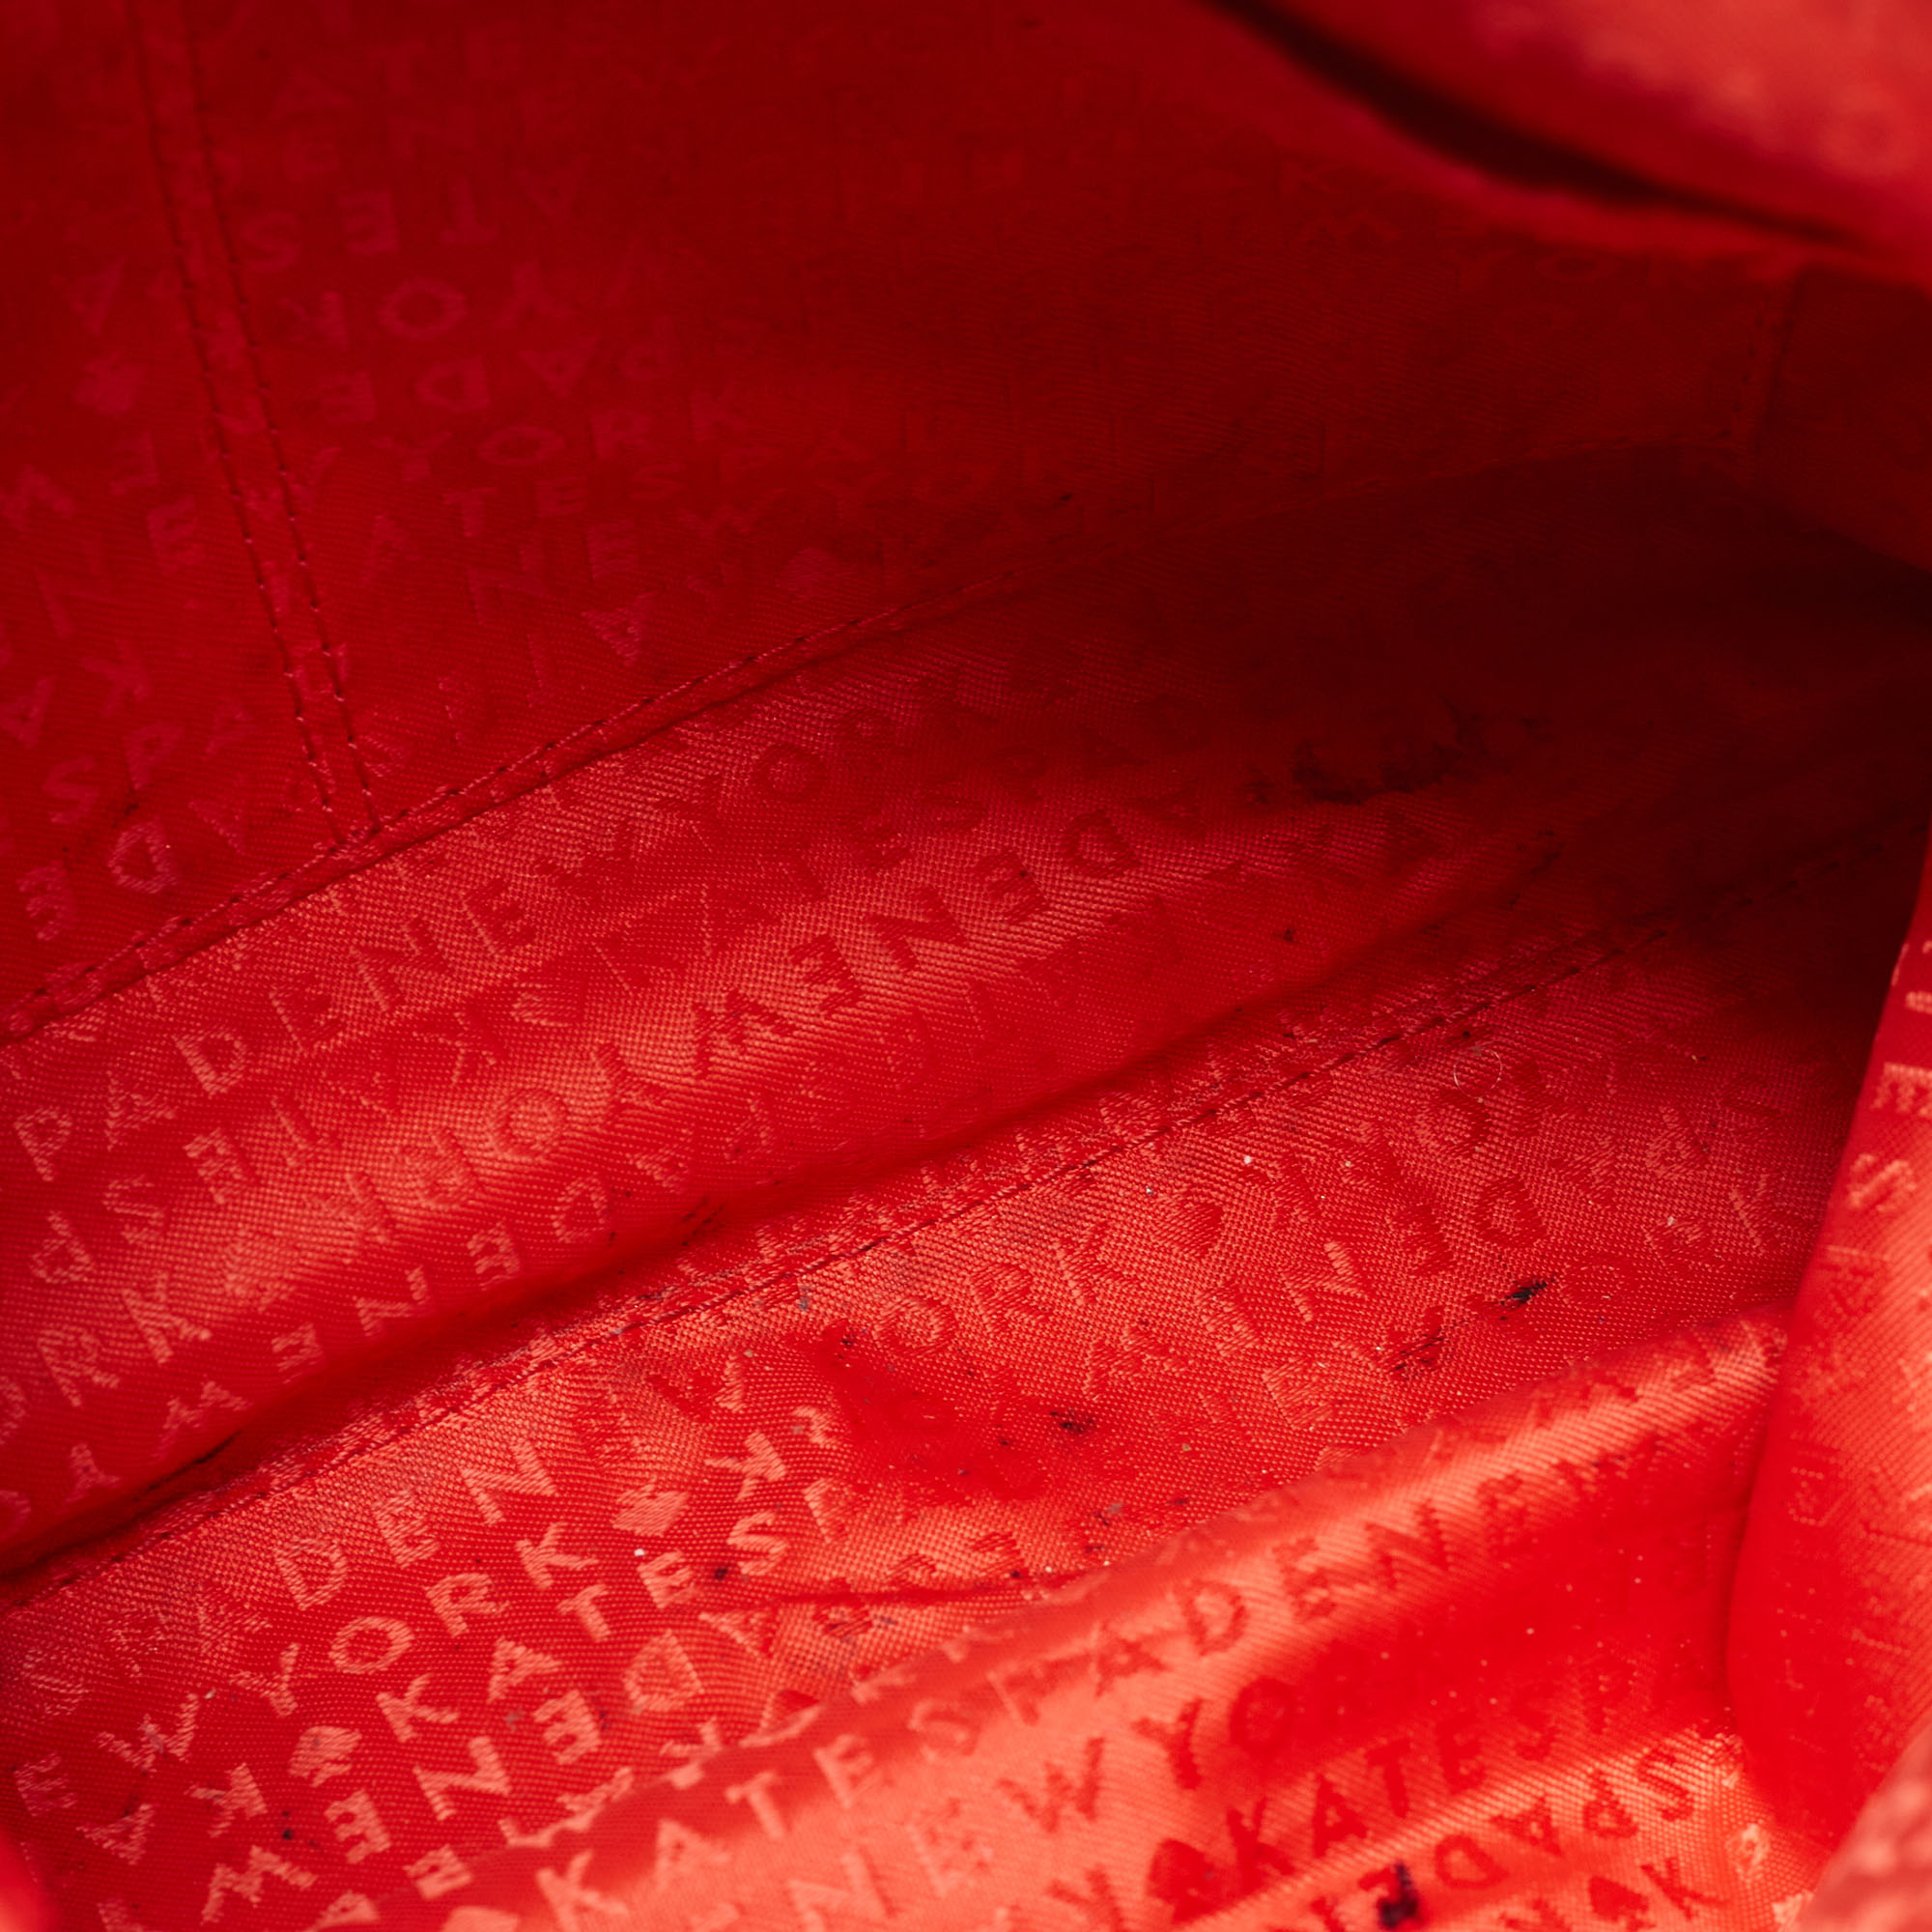 Kate Spade Red Leather Elliot Place Carmina Shoulder Bag